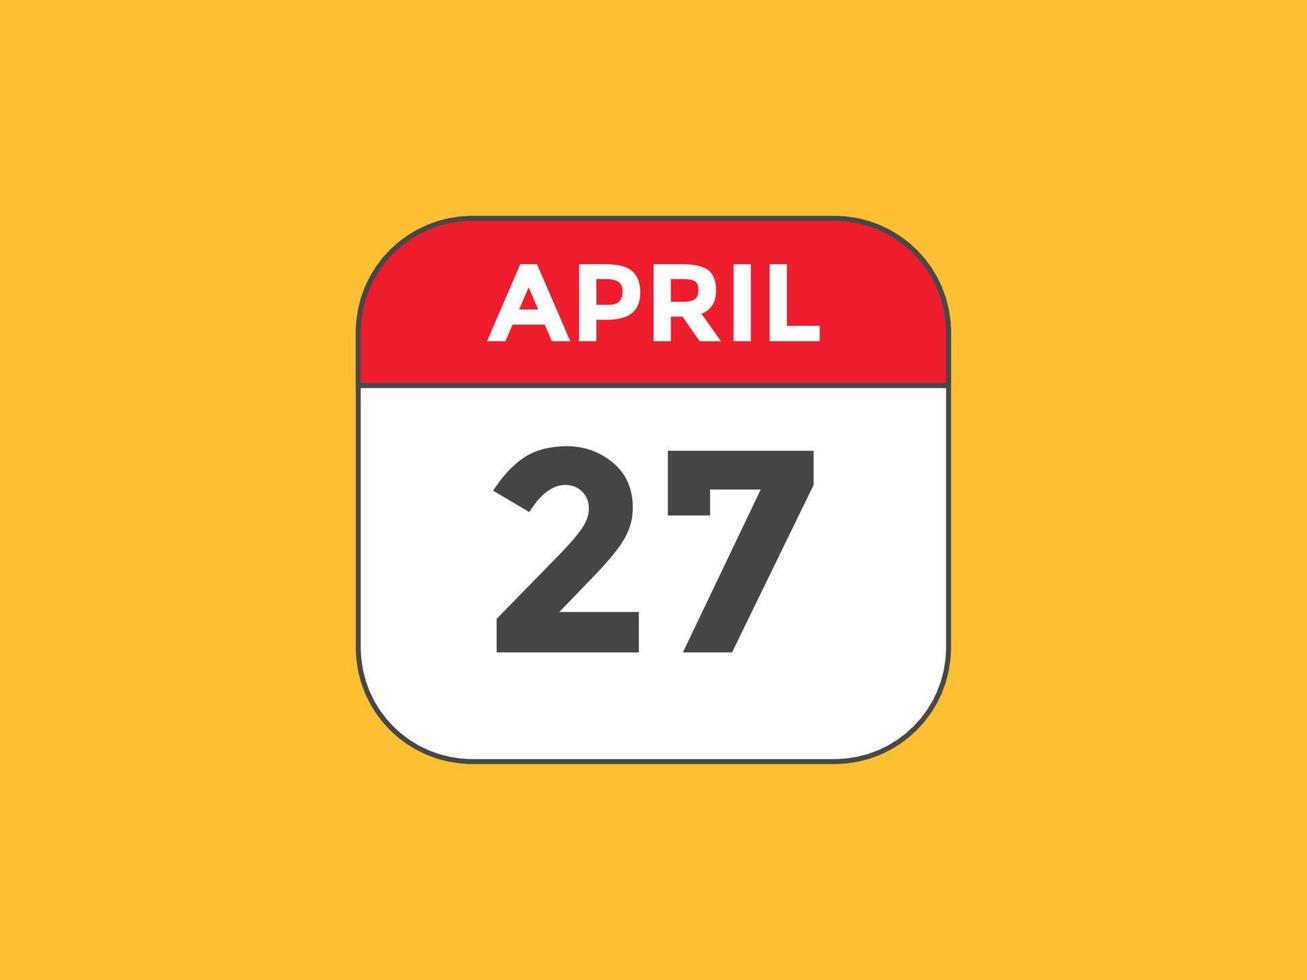 aprile 27 calendario promemoria. 27th aprile quotidiano calendario icona modello. calendario 27th aprile icona design modello. vettore illustrazione